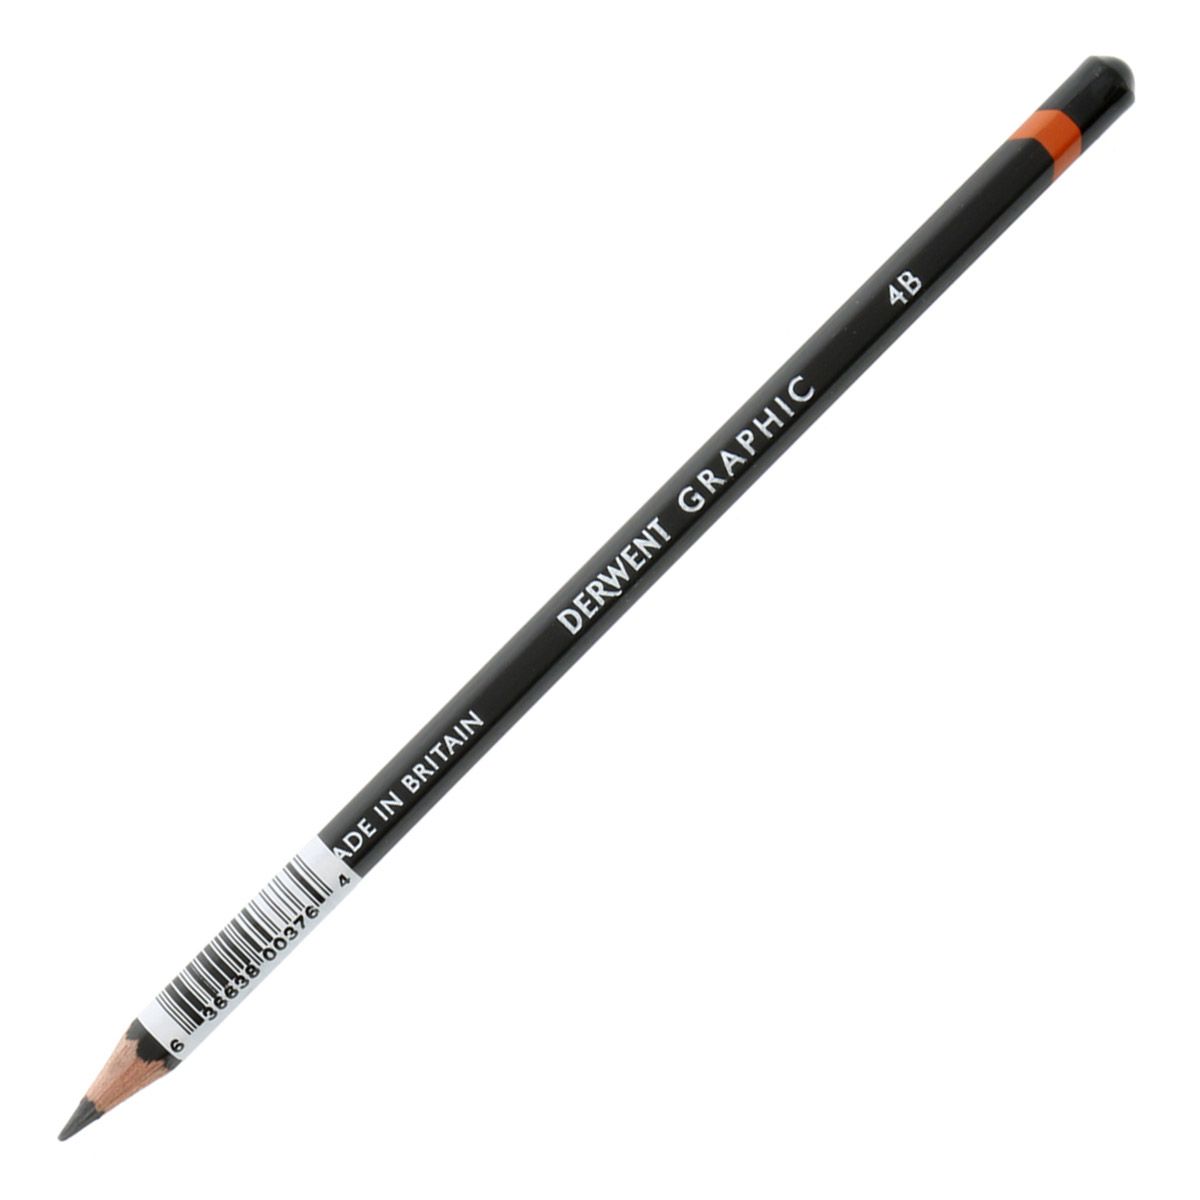 Derwent Graphic Pencil - 4B